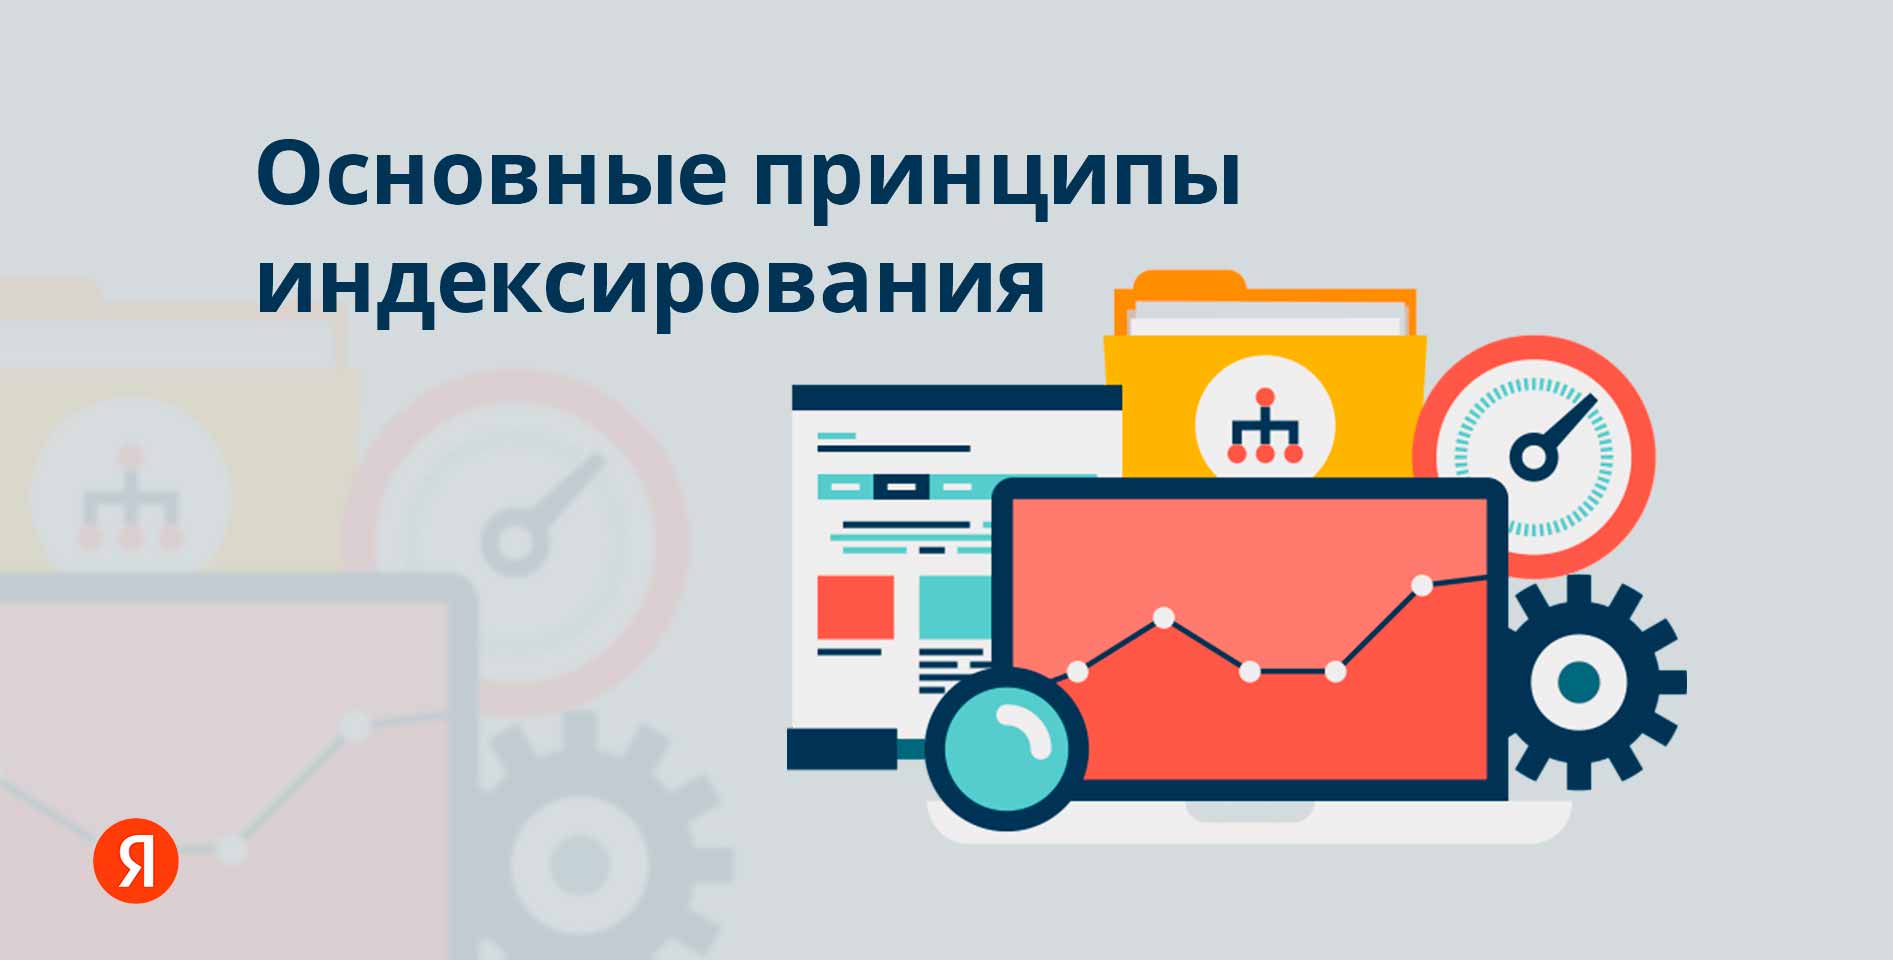 Яндекс. ру — Основные принципы индексирования